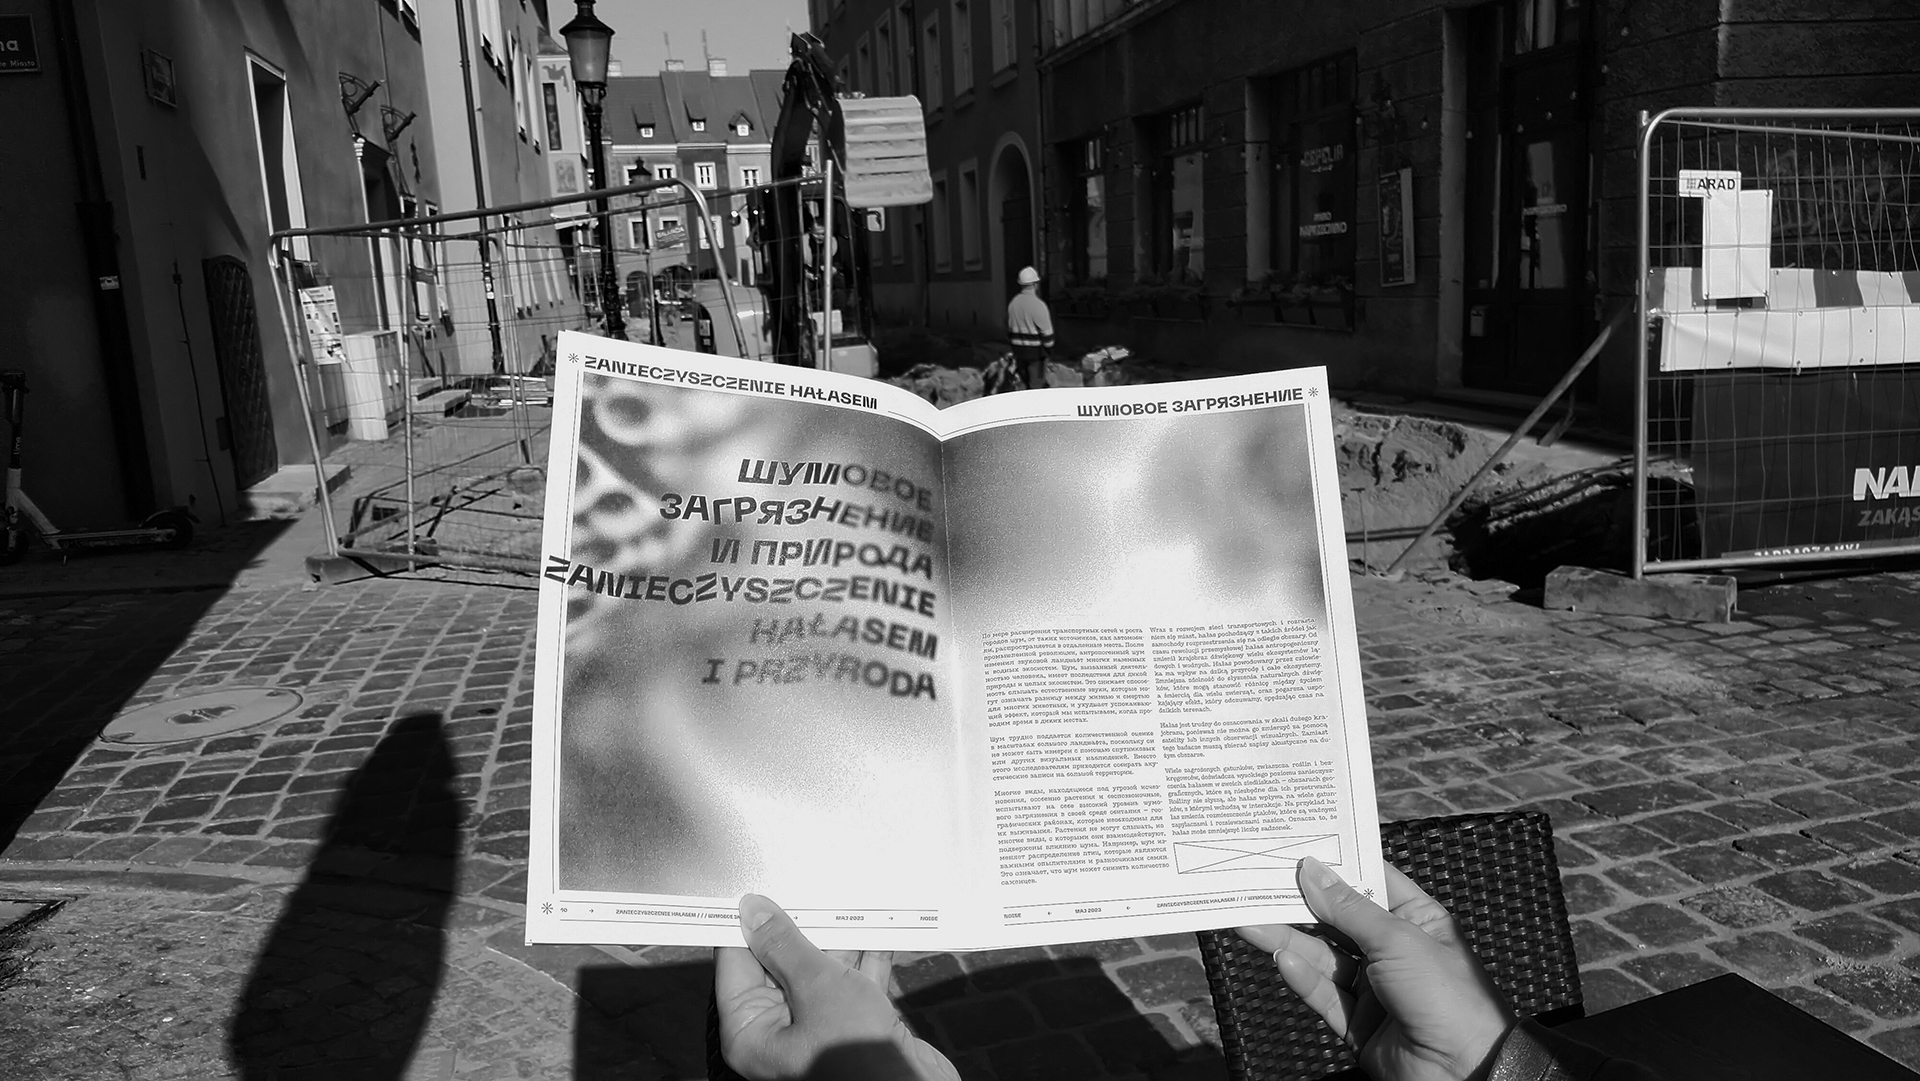 Fotografia przedstawia rozłożoną czarno białą gazetę trzymaną w rękach. W tle ulice miasta podczas remontu nawierzchni, widoczne maszyny - koparka i wykopy. Fotografia czarno-biała.